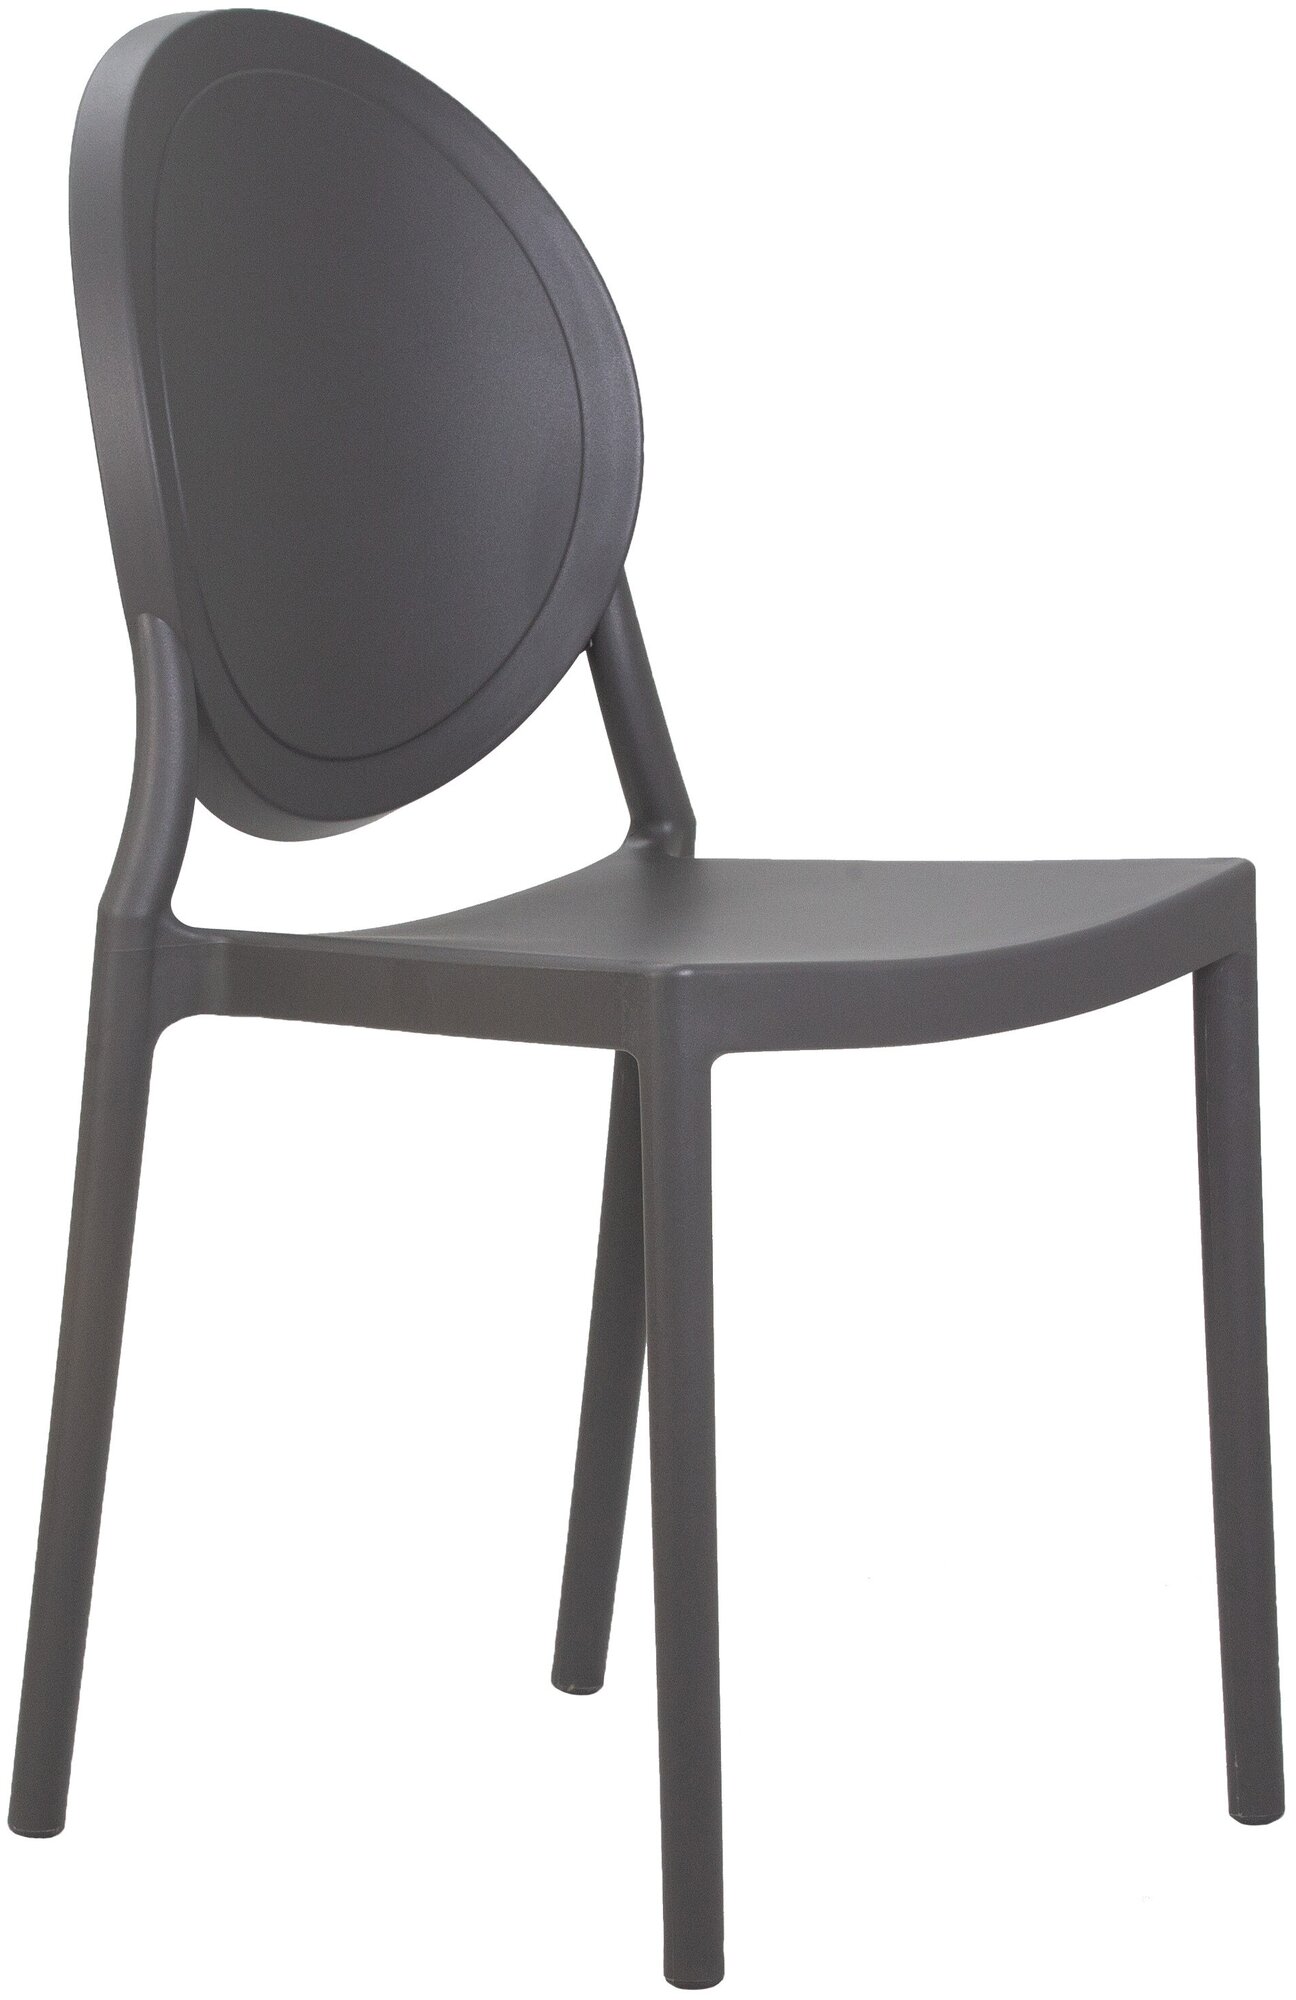 Обеденный кухонный пластиковый легкий стул ALBERT для дома дачи садового участка, улицы, кафе, серый - фотография № 1